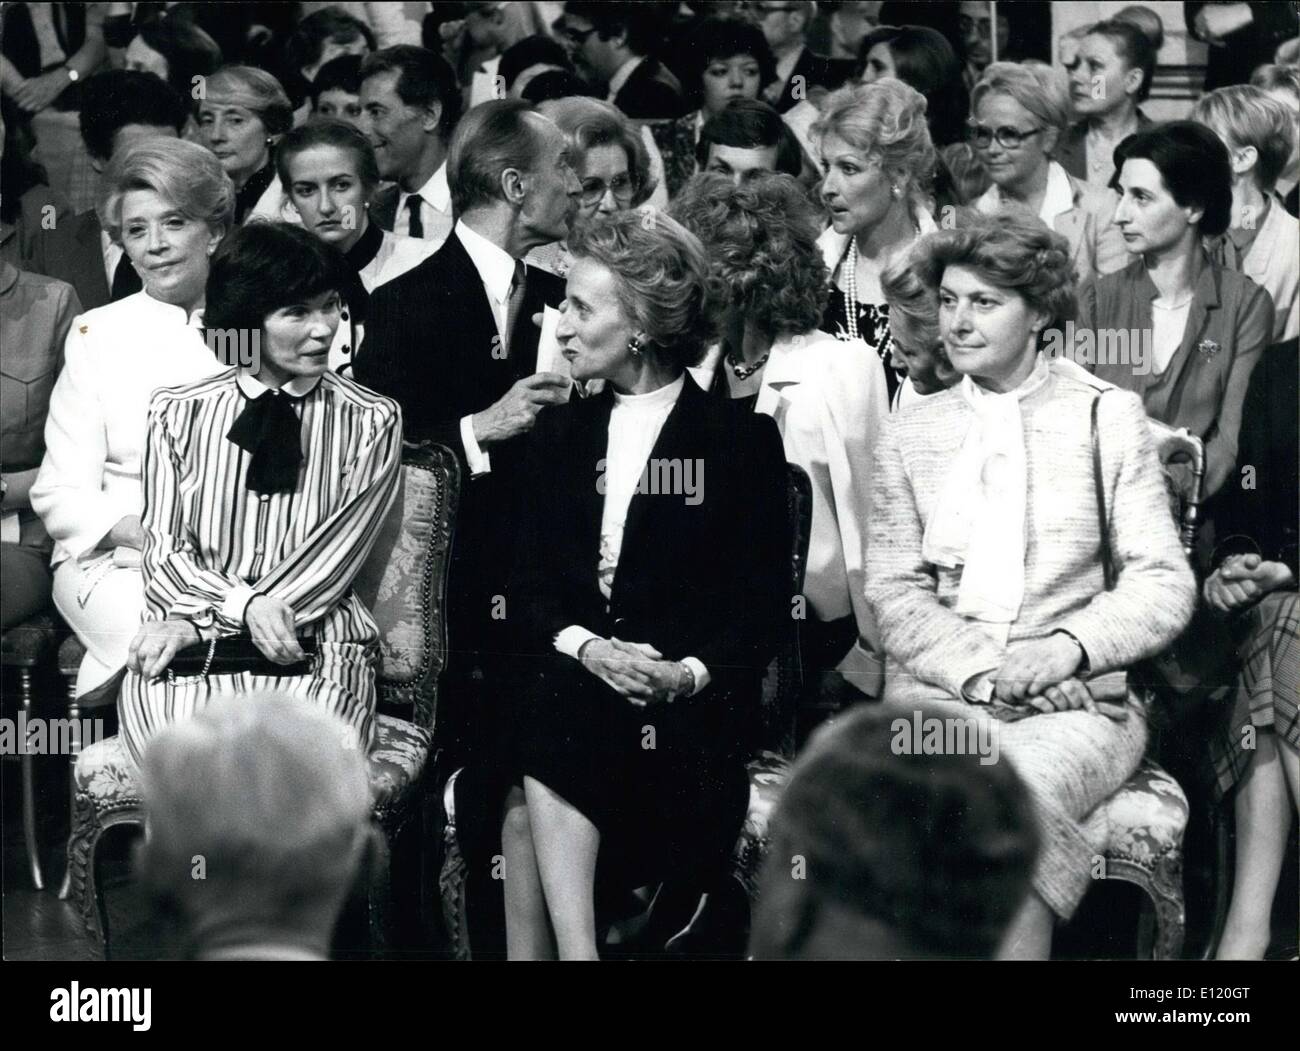 22 maggio 1981 - politico mogli, da sinistra a destra: prima donna di Francia Daniele Mitterand, Bernadette Chirac, moglie del Sindaco di Parigi e la Sig.ra Mauroy, moglie del Primo Ministro Pierre Mauroy. Foto Stock